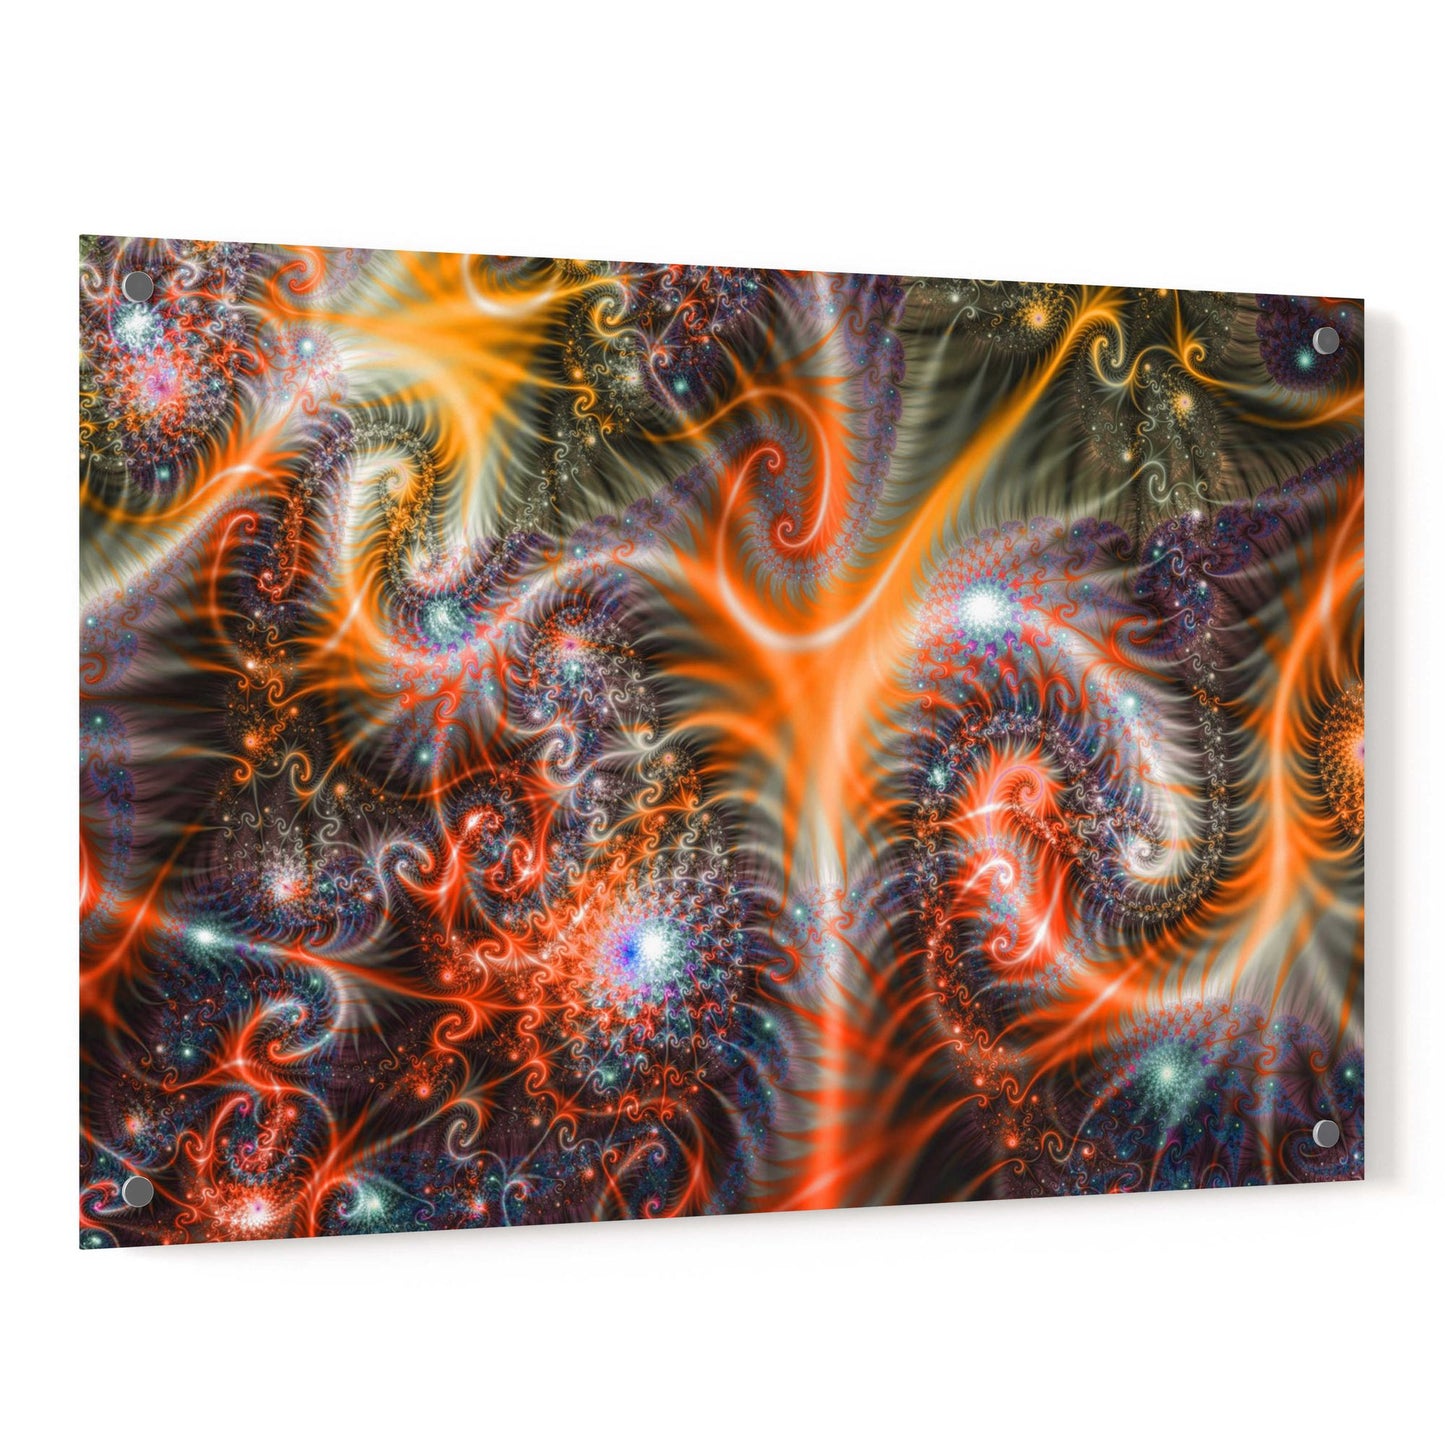 Epic Art 'Amoeba' Acrylic Glass Wall Art,24x36